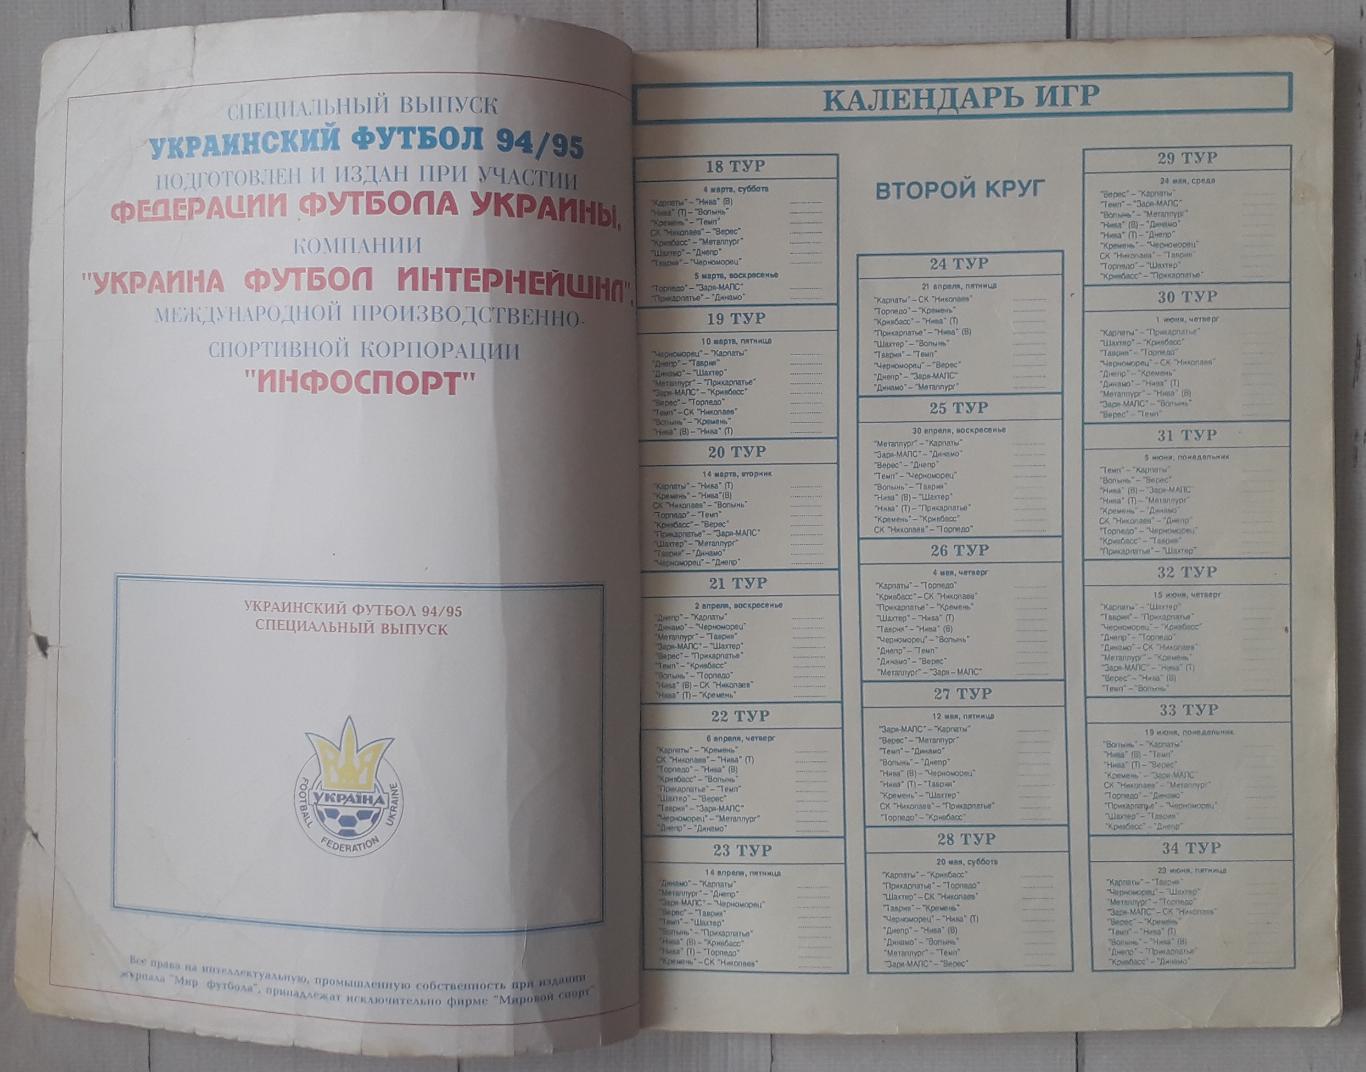 Мир футбола. Украинский футбол 94/95. Высшая лига. Спецвыпуск 1